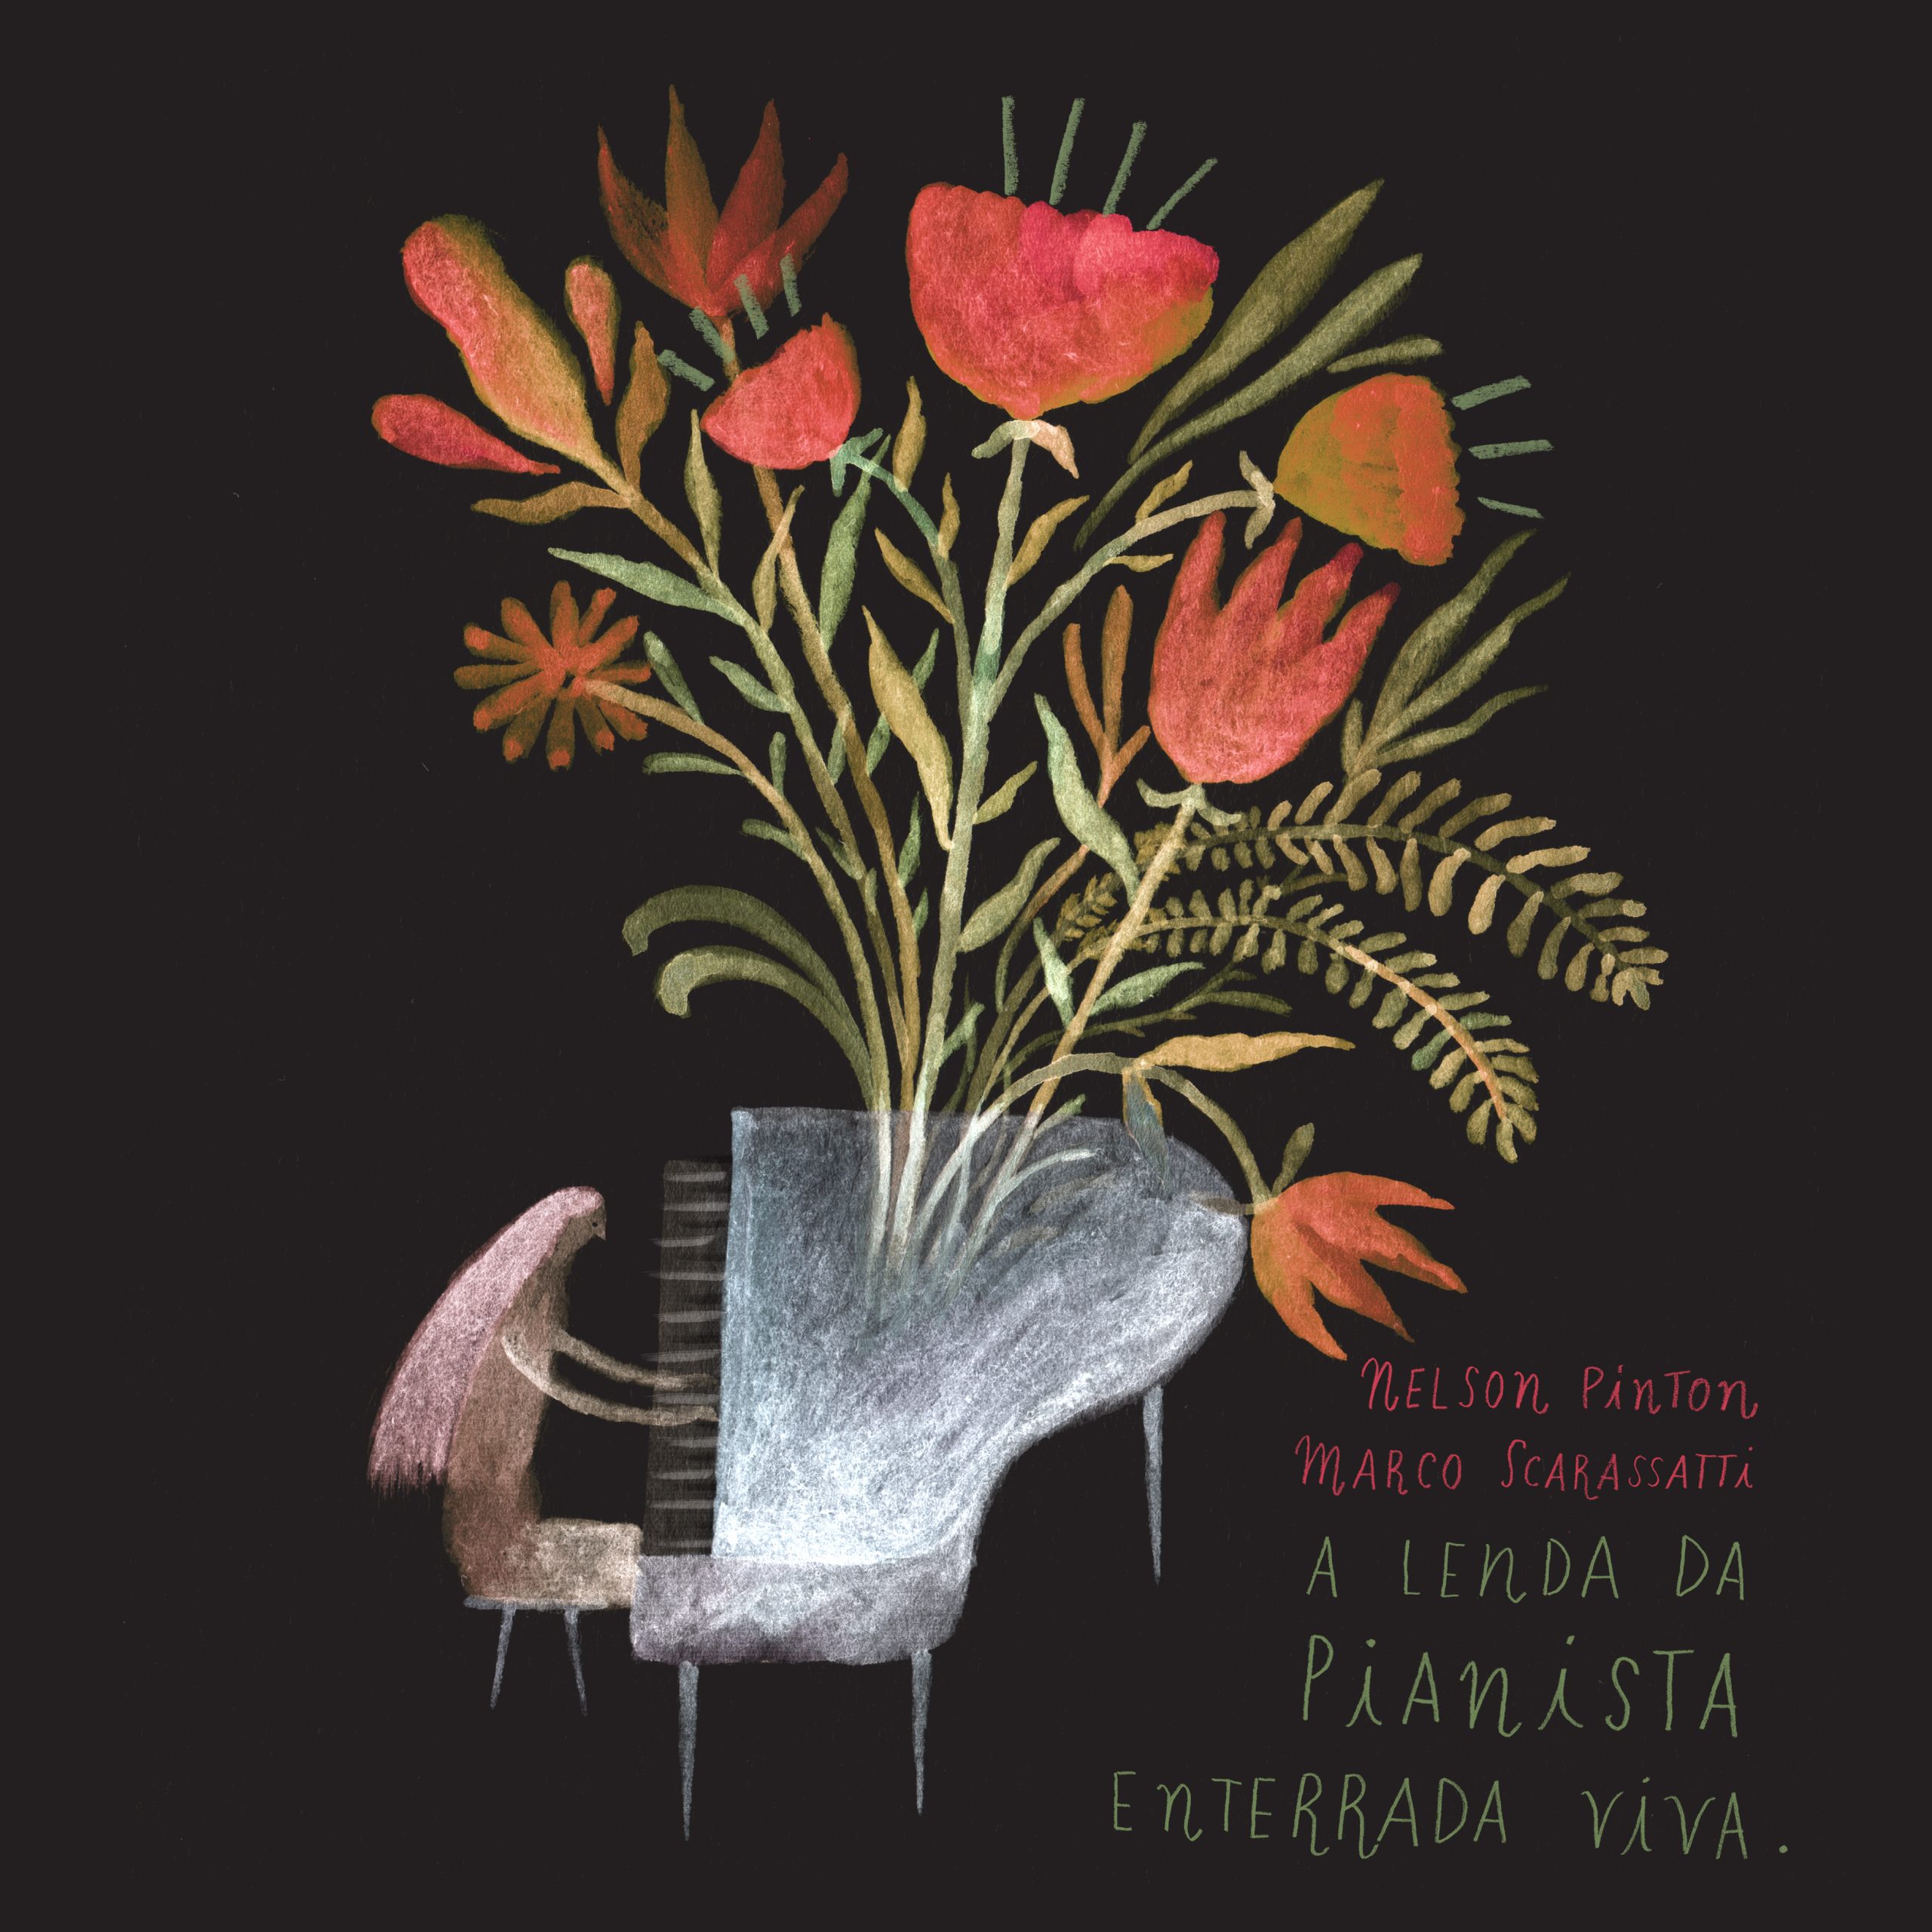 Nelson Pinton e Marco Scarassatti ‘A lenda da pianista enterrada viva’